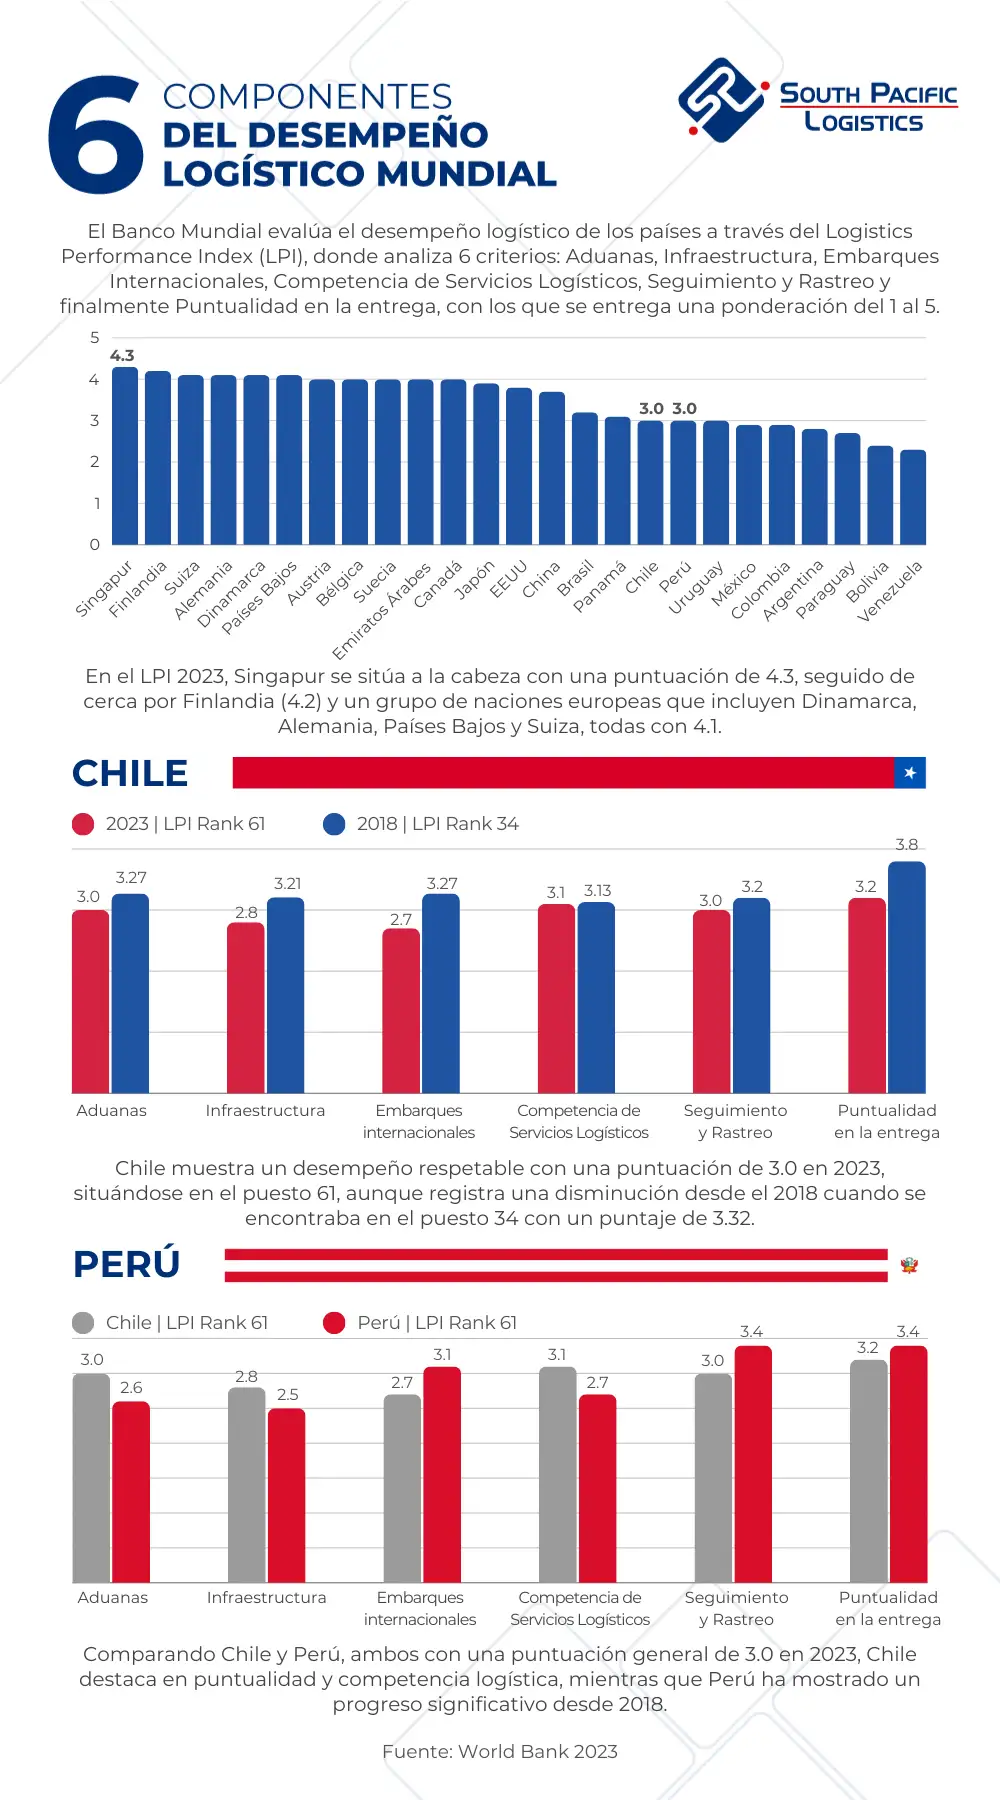 Infografia sobre el Desempeño Logistico de Chile de acuerdo al Banco Mundial